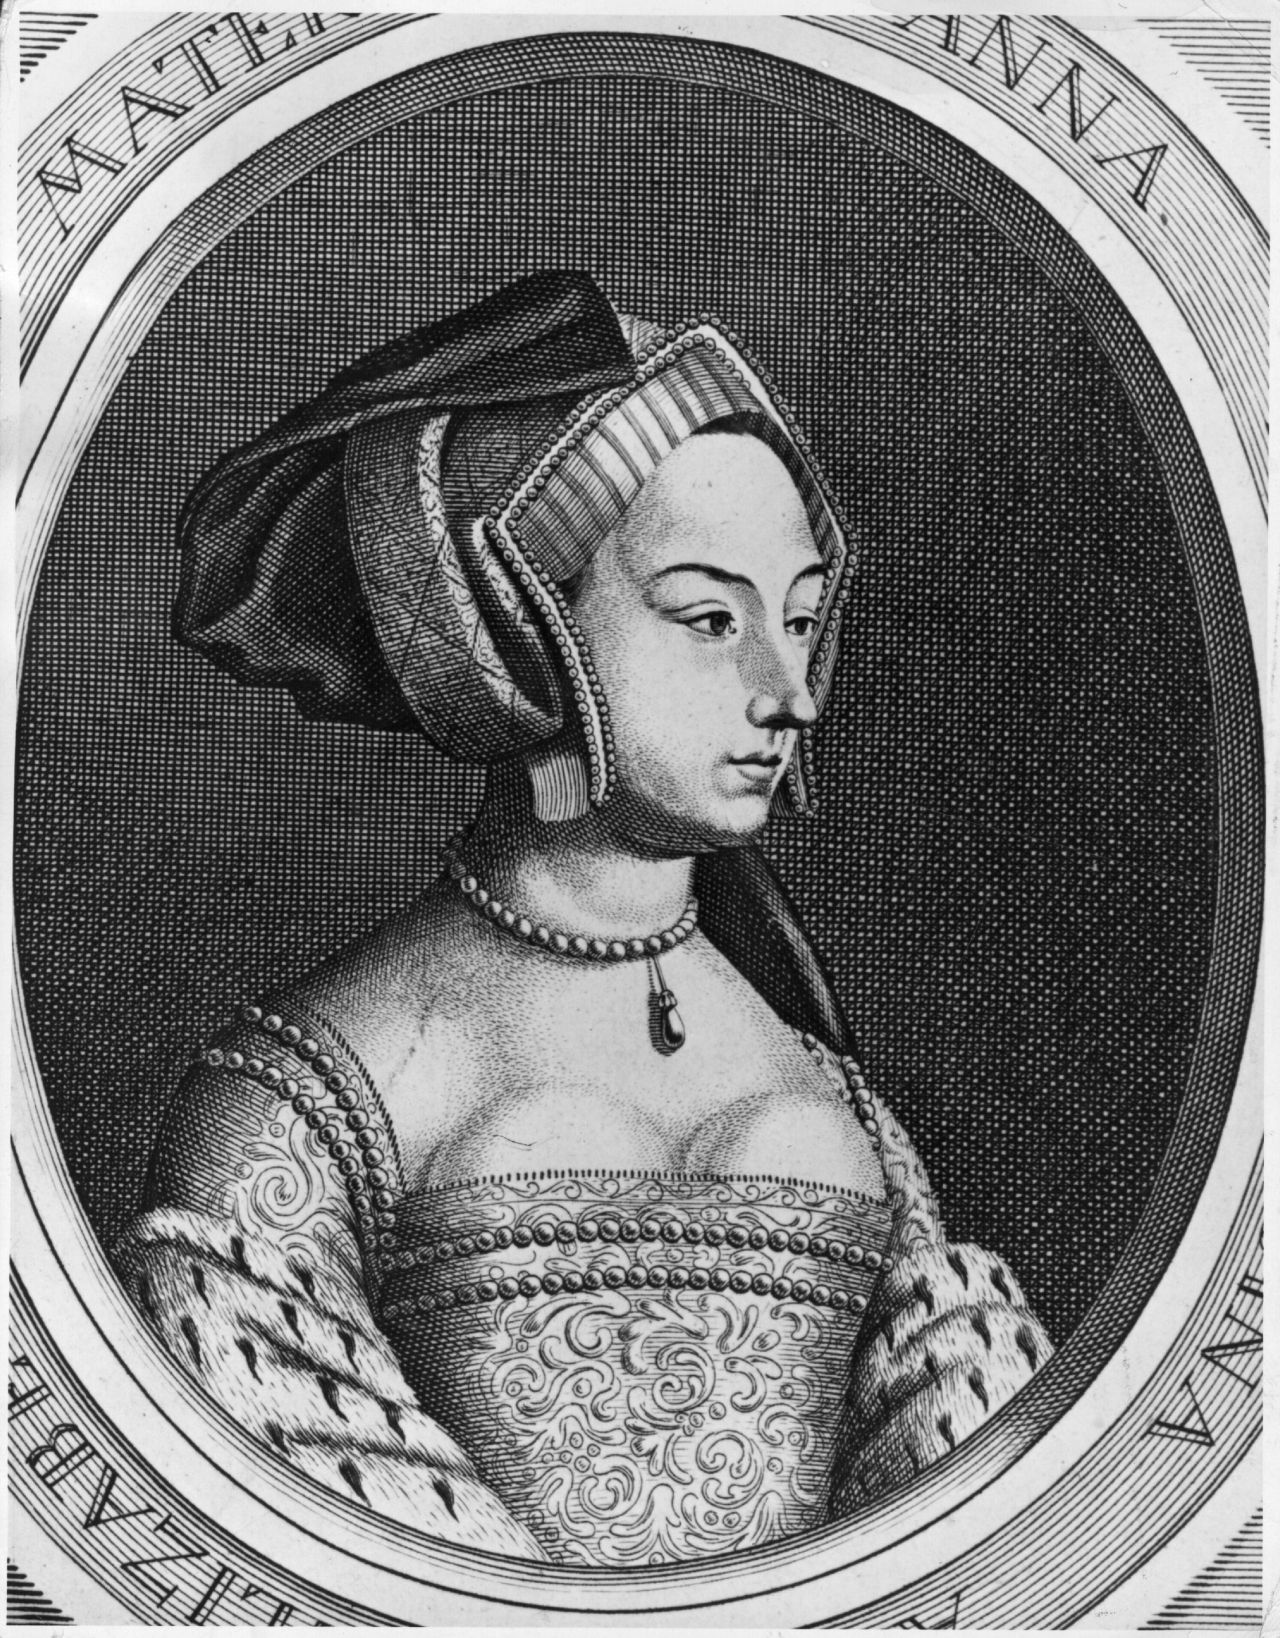 <p><strong>Ан Болейн (1501 или 1507-1536)</strong><br />
Любовница, превърнала се в кралица, Ан Болейн очарова Хенри VIII и това го кара да се разведе с тогавашната кралица Катрин Арагонска и да се ожени за нея. След това той я екзекутира за предателство. Това прави Ан Болейн ключова фигура в политическия и религиозен катаклизъм, който бележи началото на английската Реформация.</p>